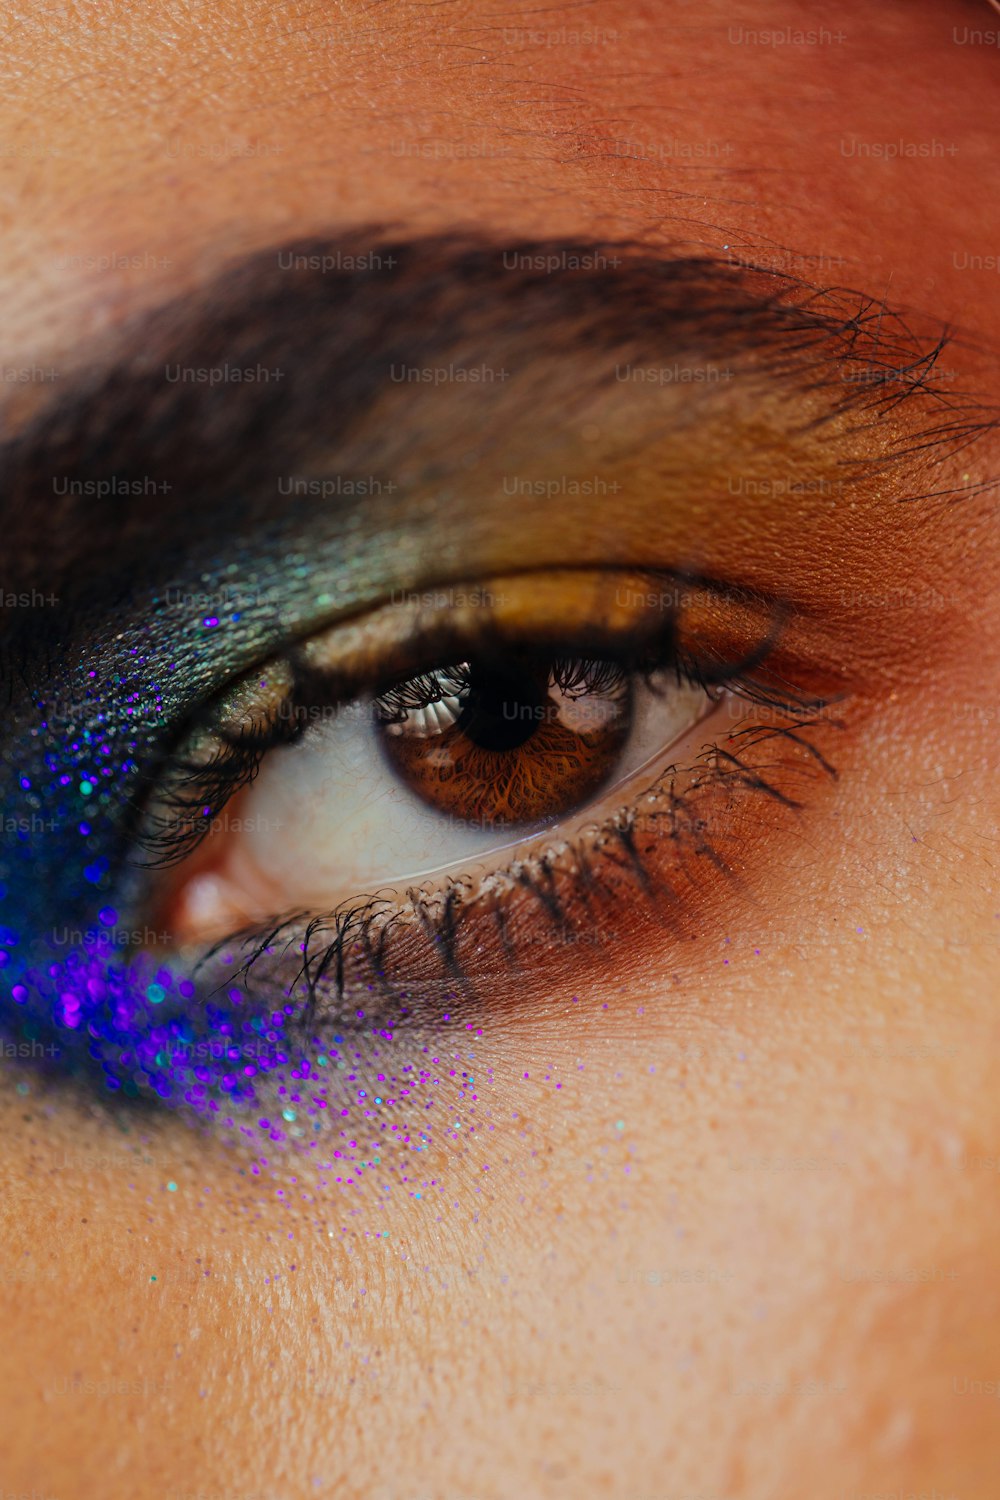 un gros plan de l’œil d’une personne avec un fard à paupières bleu et violet